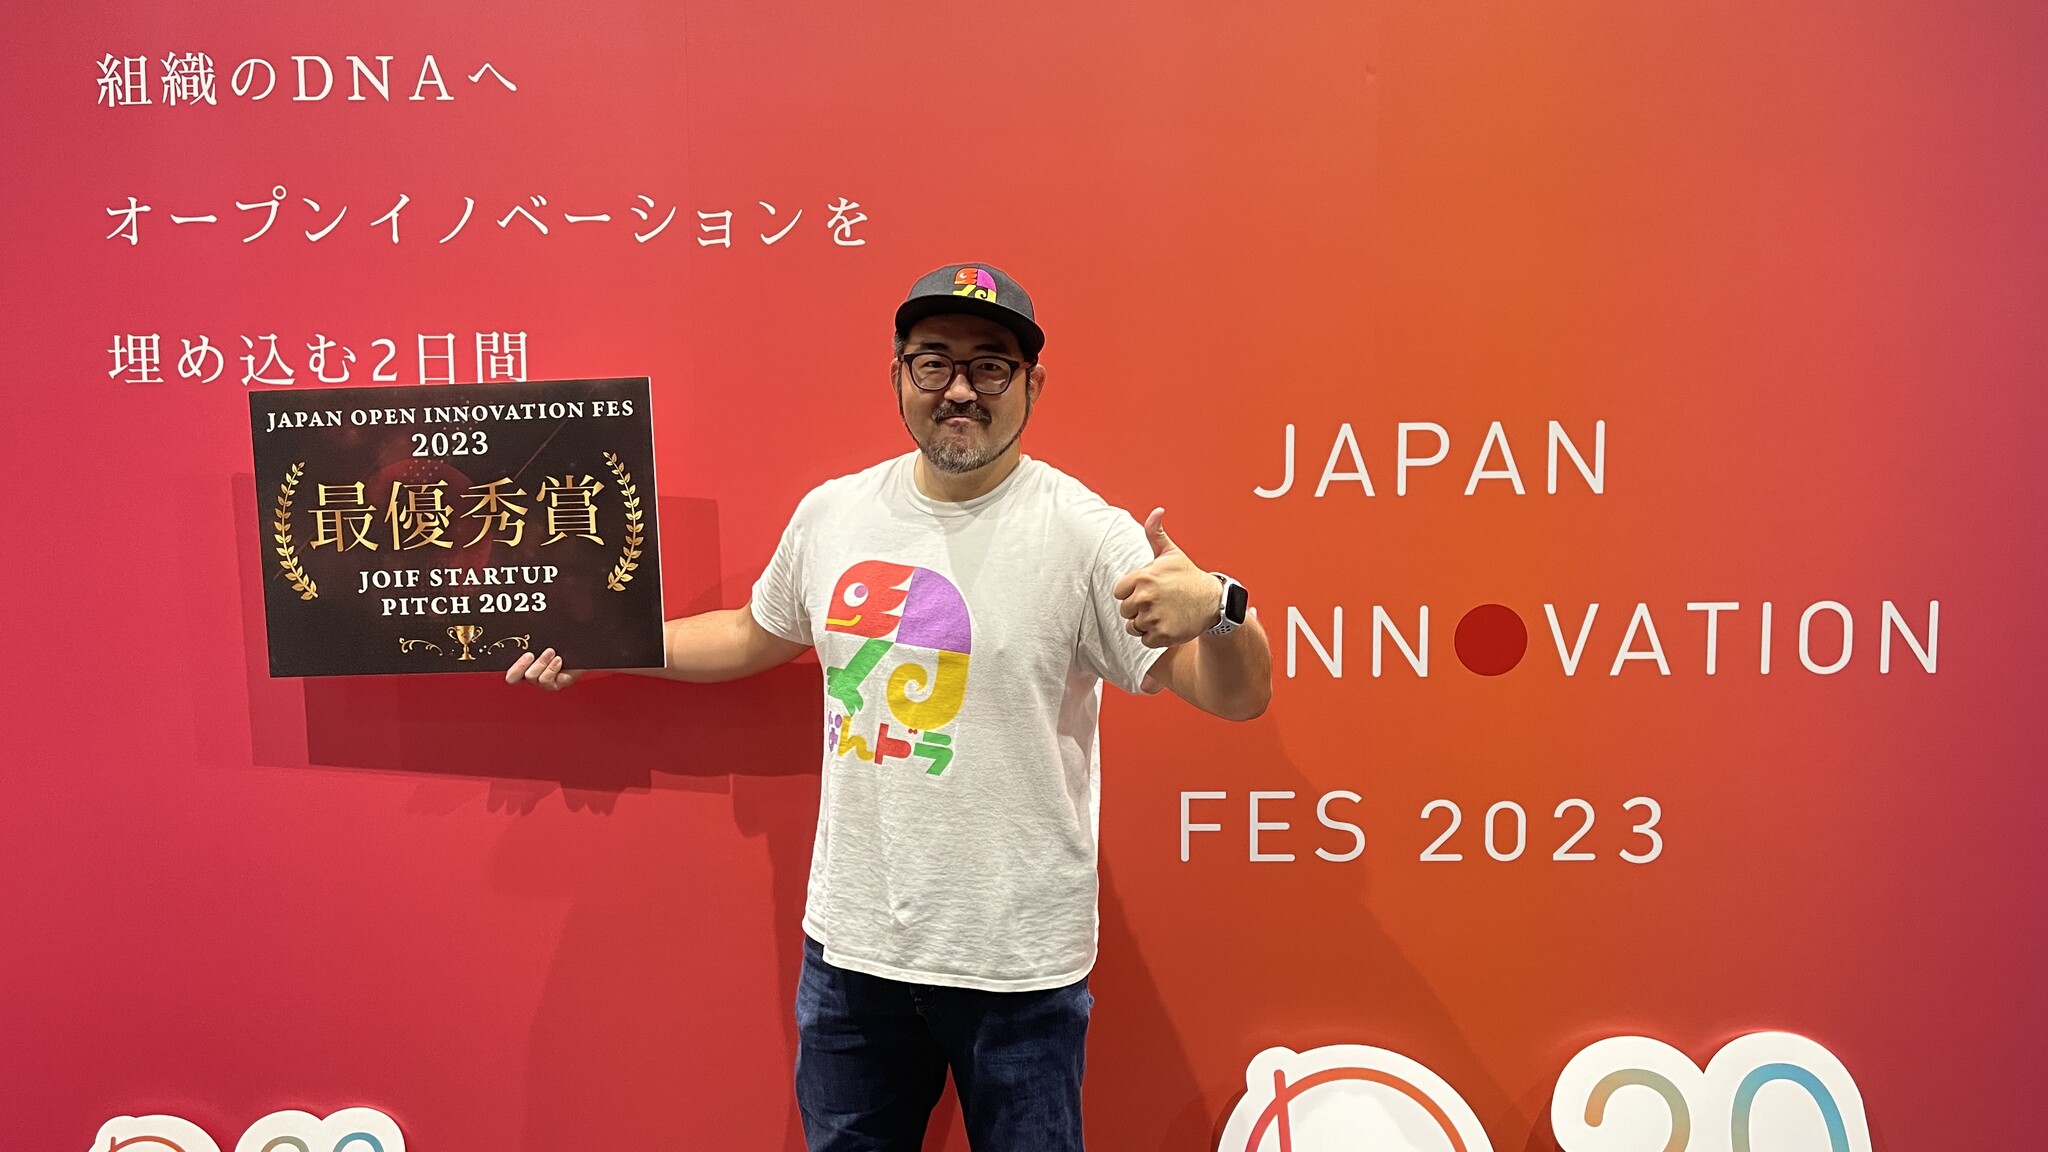 【なんドラ】日本最大級のオープンイノベーション見本市「Japan Open Innovation Fes 2023」の「JOIF STARTUP PITCH 2023」で「なんドラ」が最優秀賞を獲得